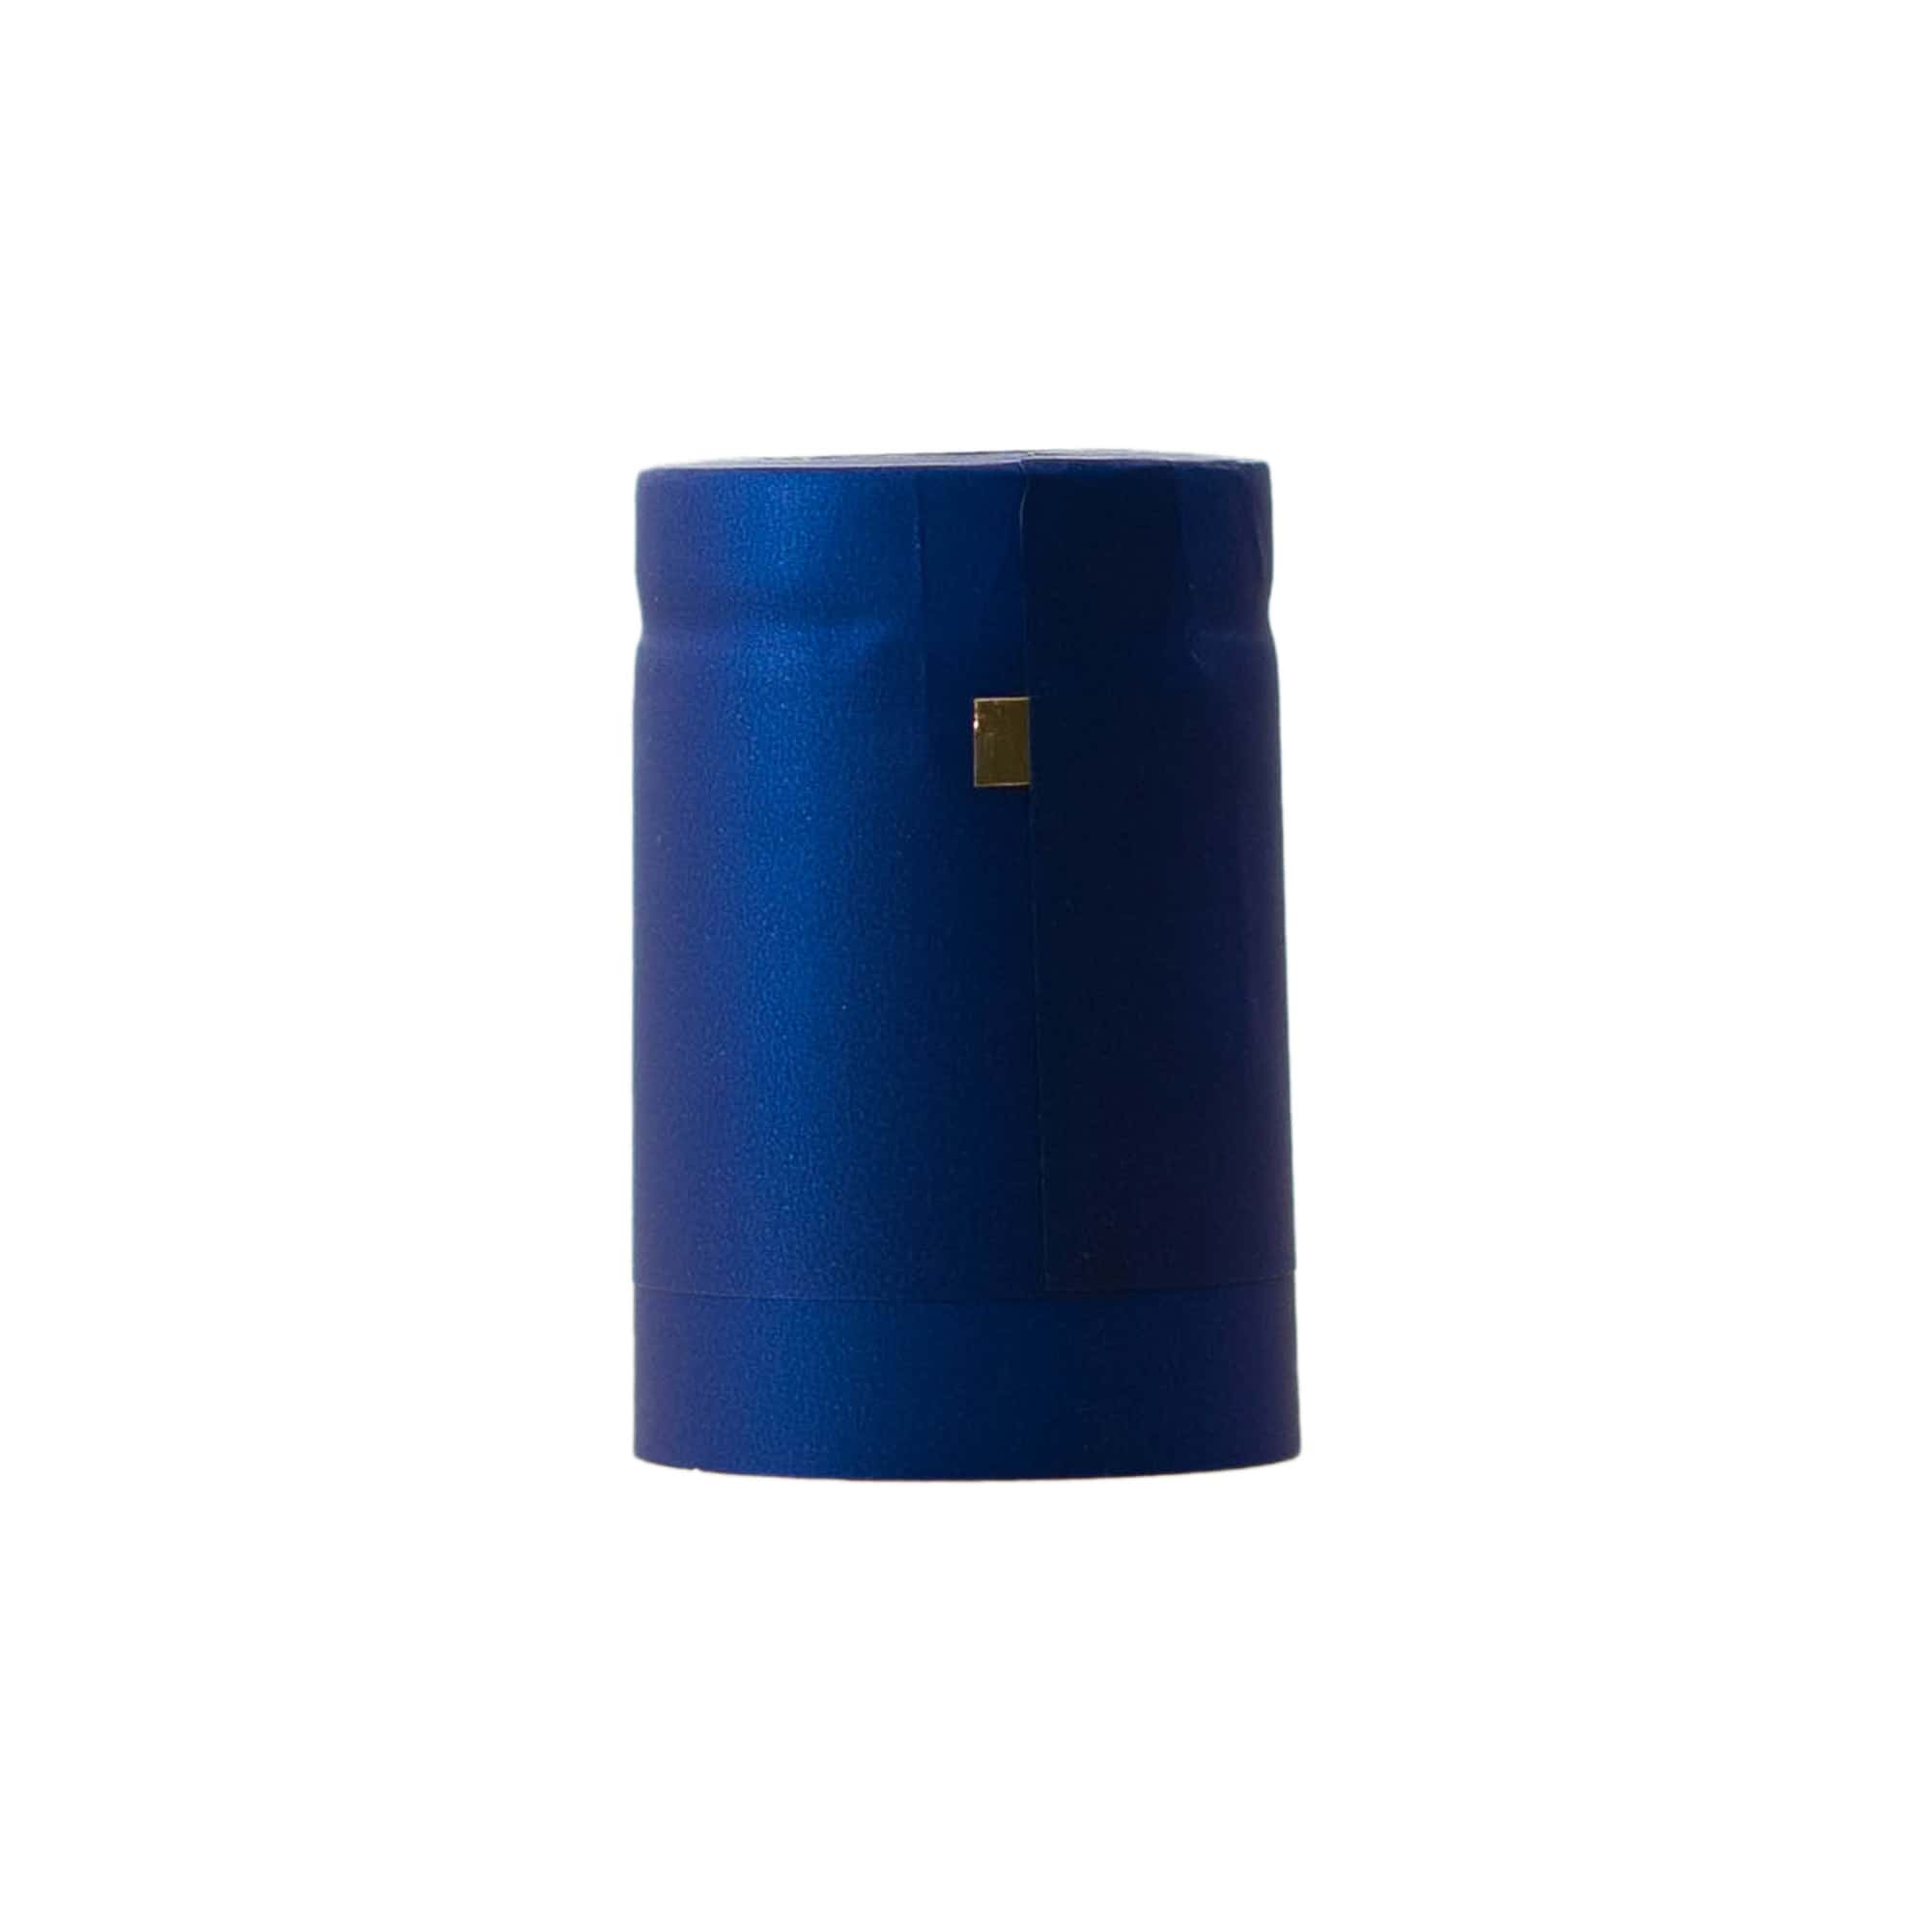 Cápsula termoencogible 32x41, plástico de PVC, azul